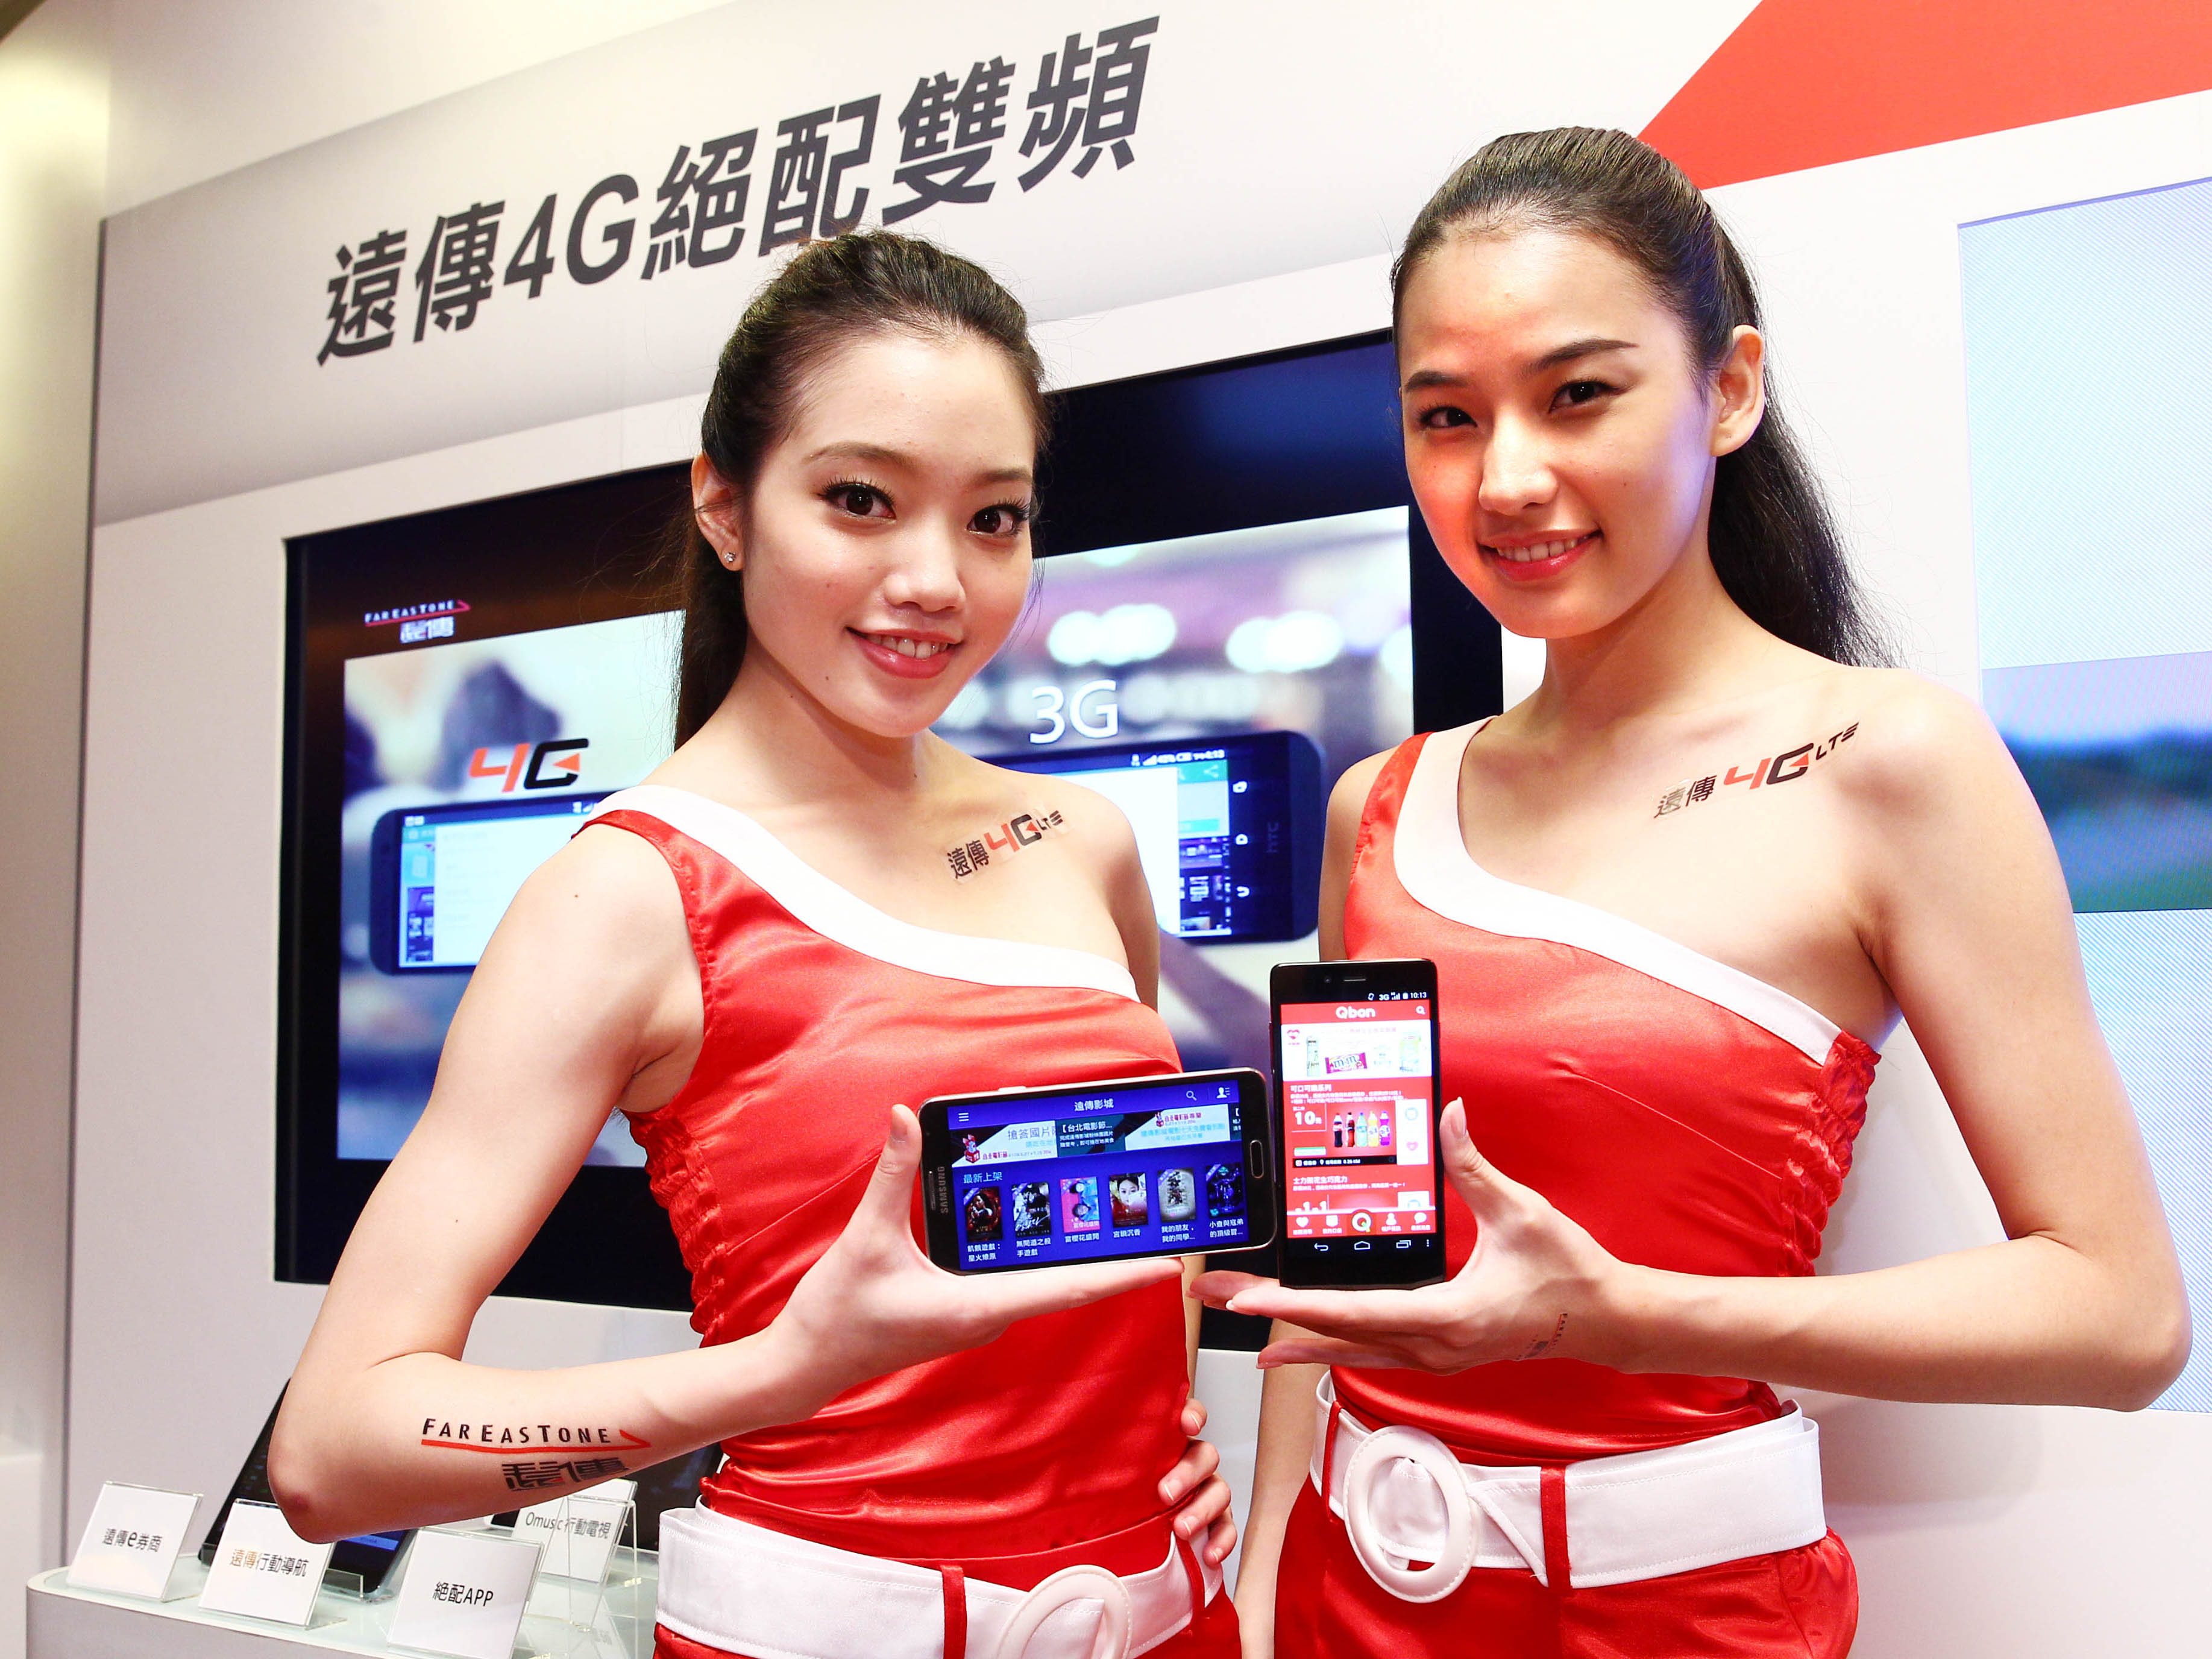 新一波 4G 優惠戰開打 中華電信推吃到飽方案 遠傳、台哥大跟進加碼